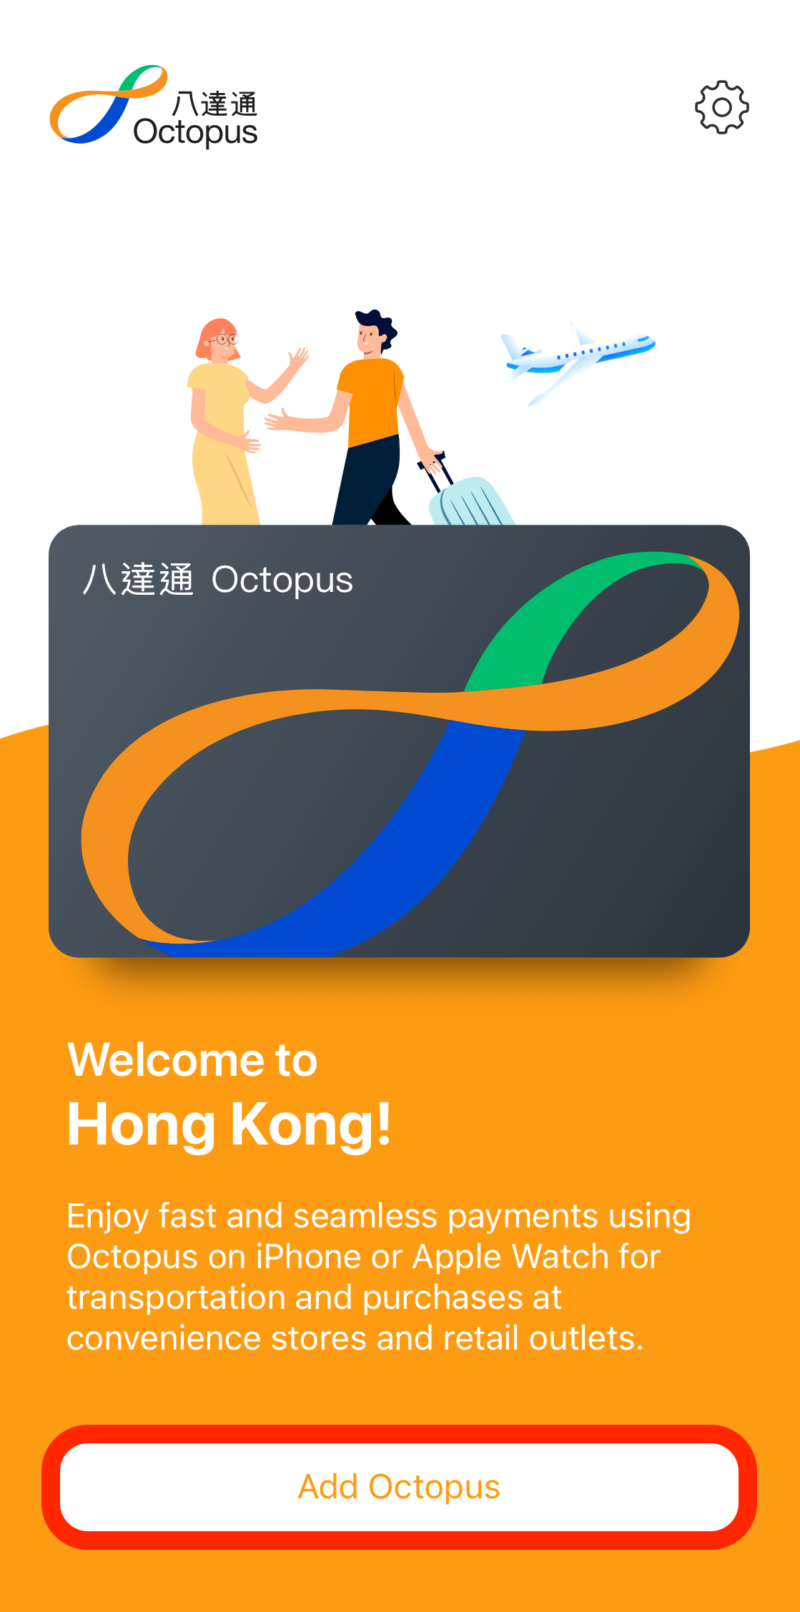 オクトパスカードアプリの画面